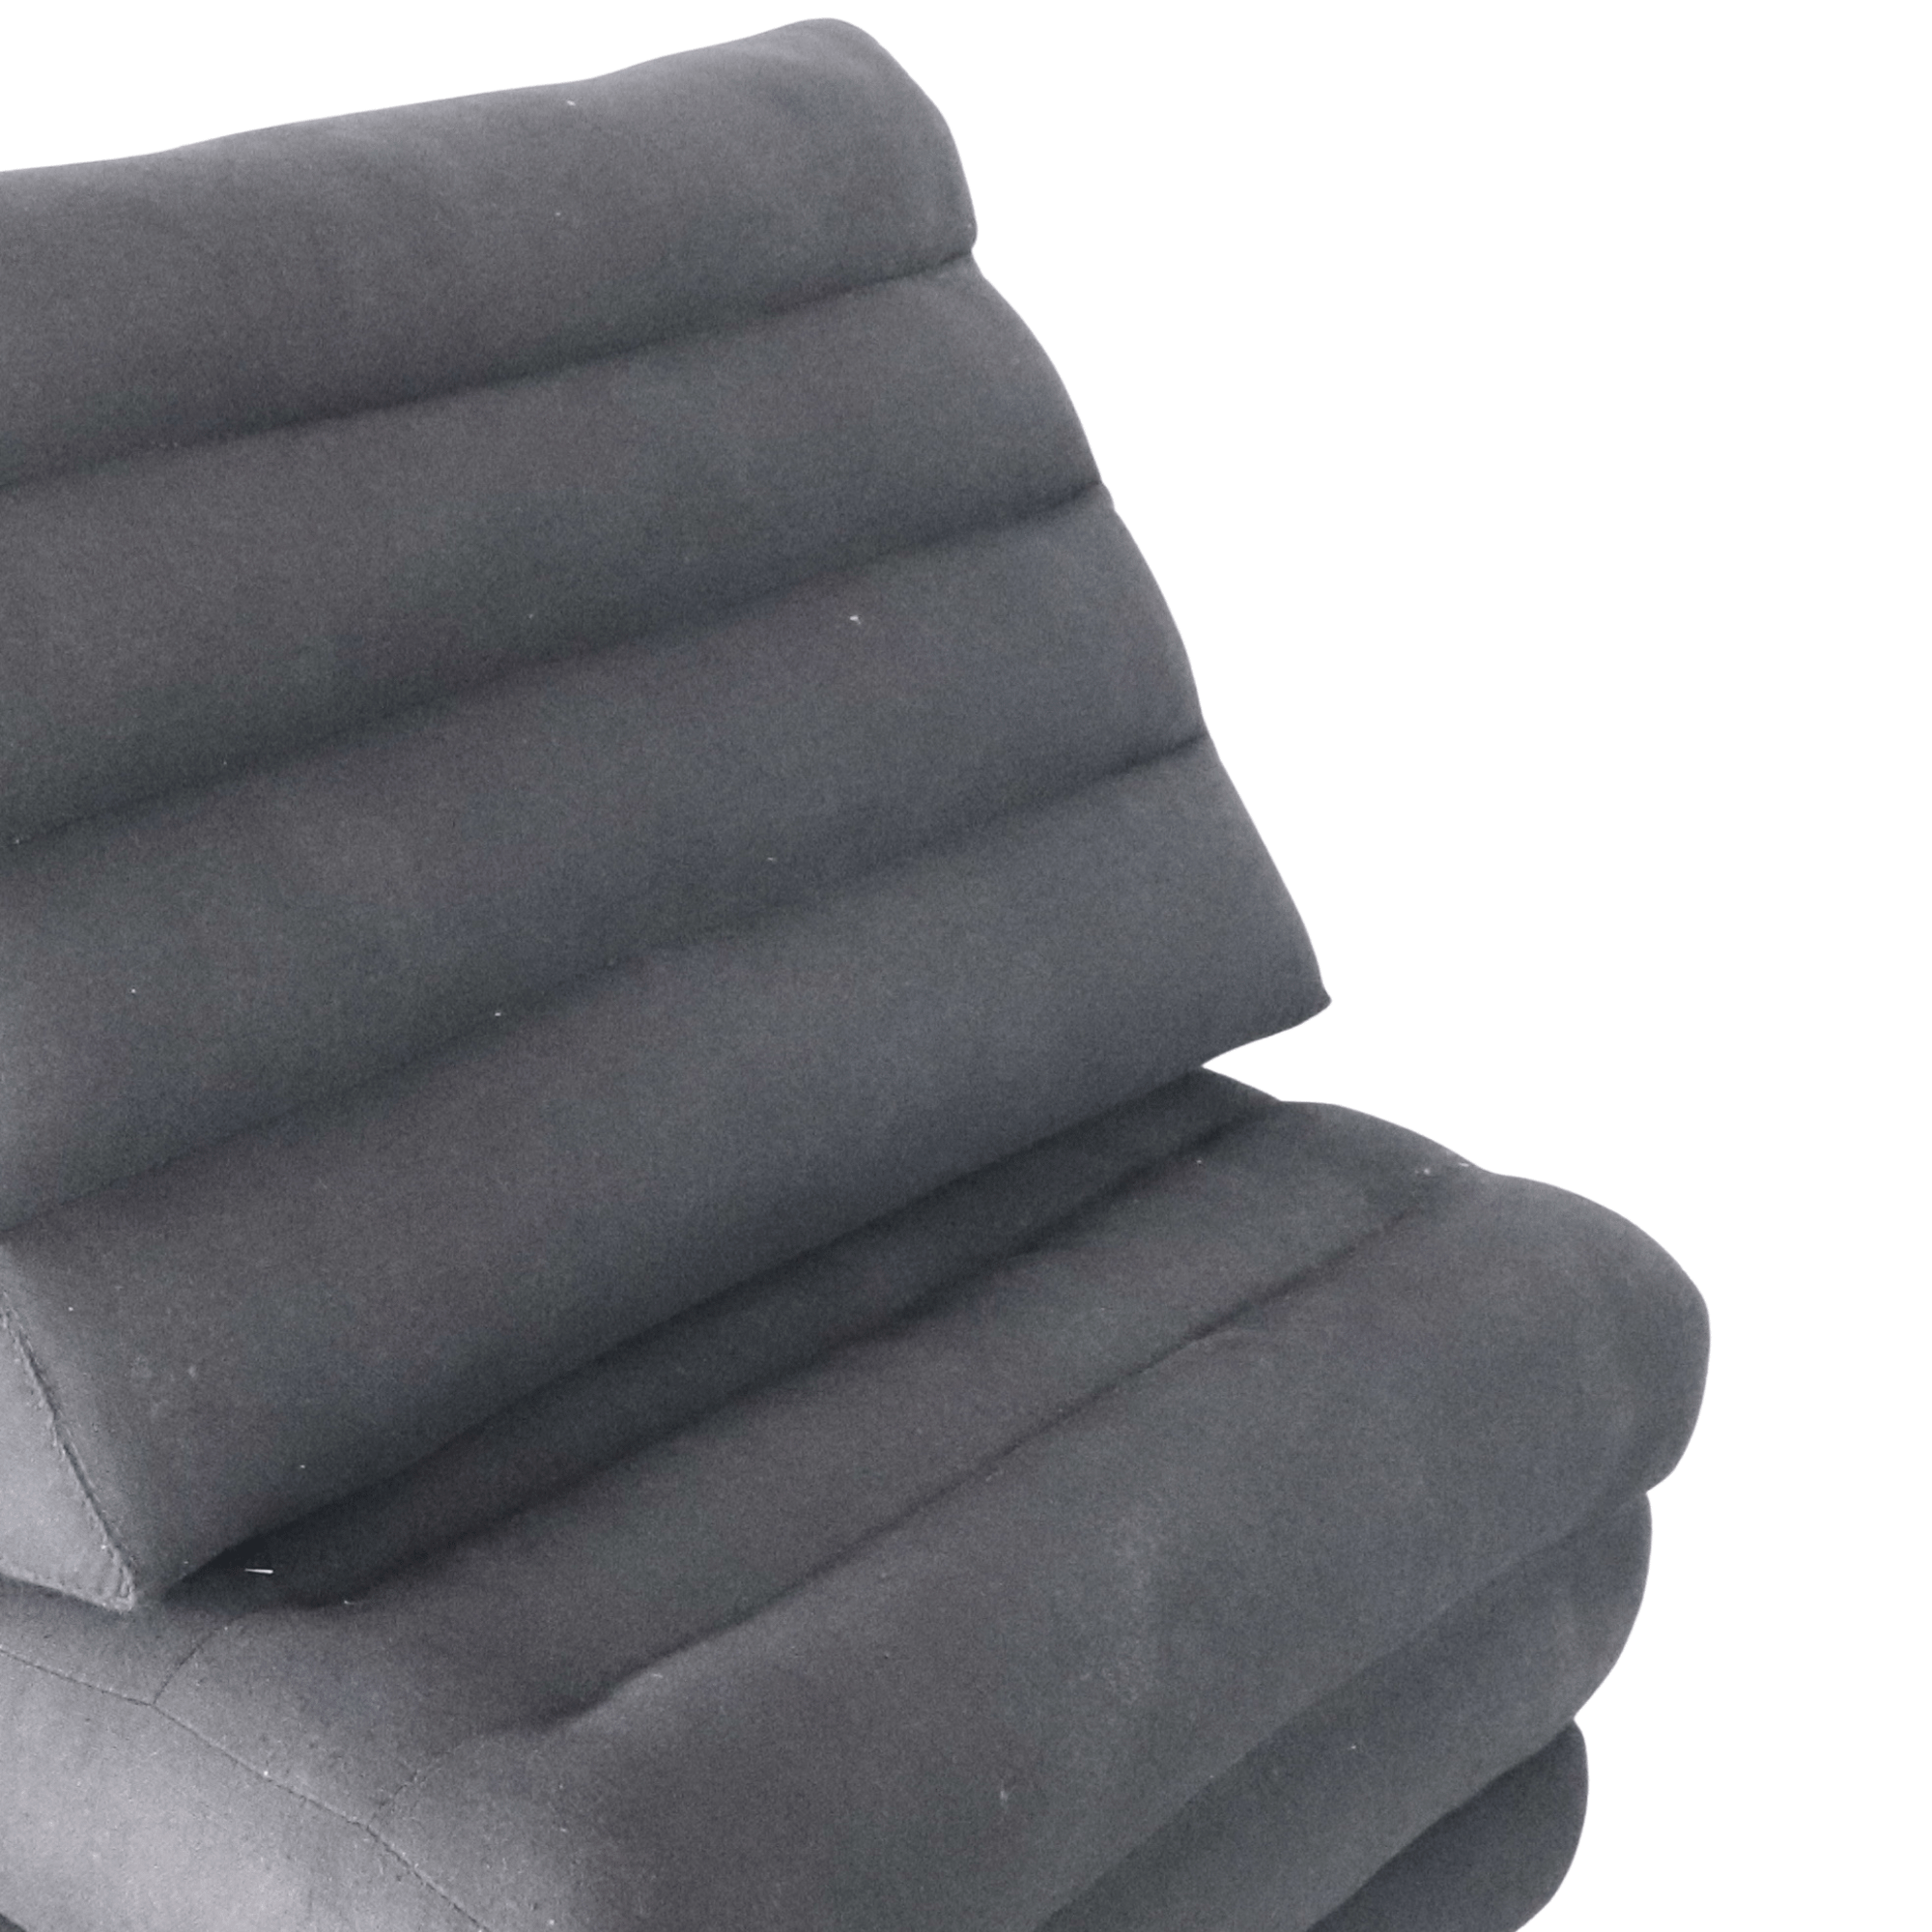 THAIHOME Cushion Nannette - Triangle Cushion